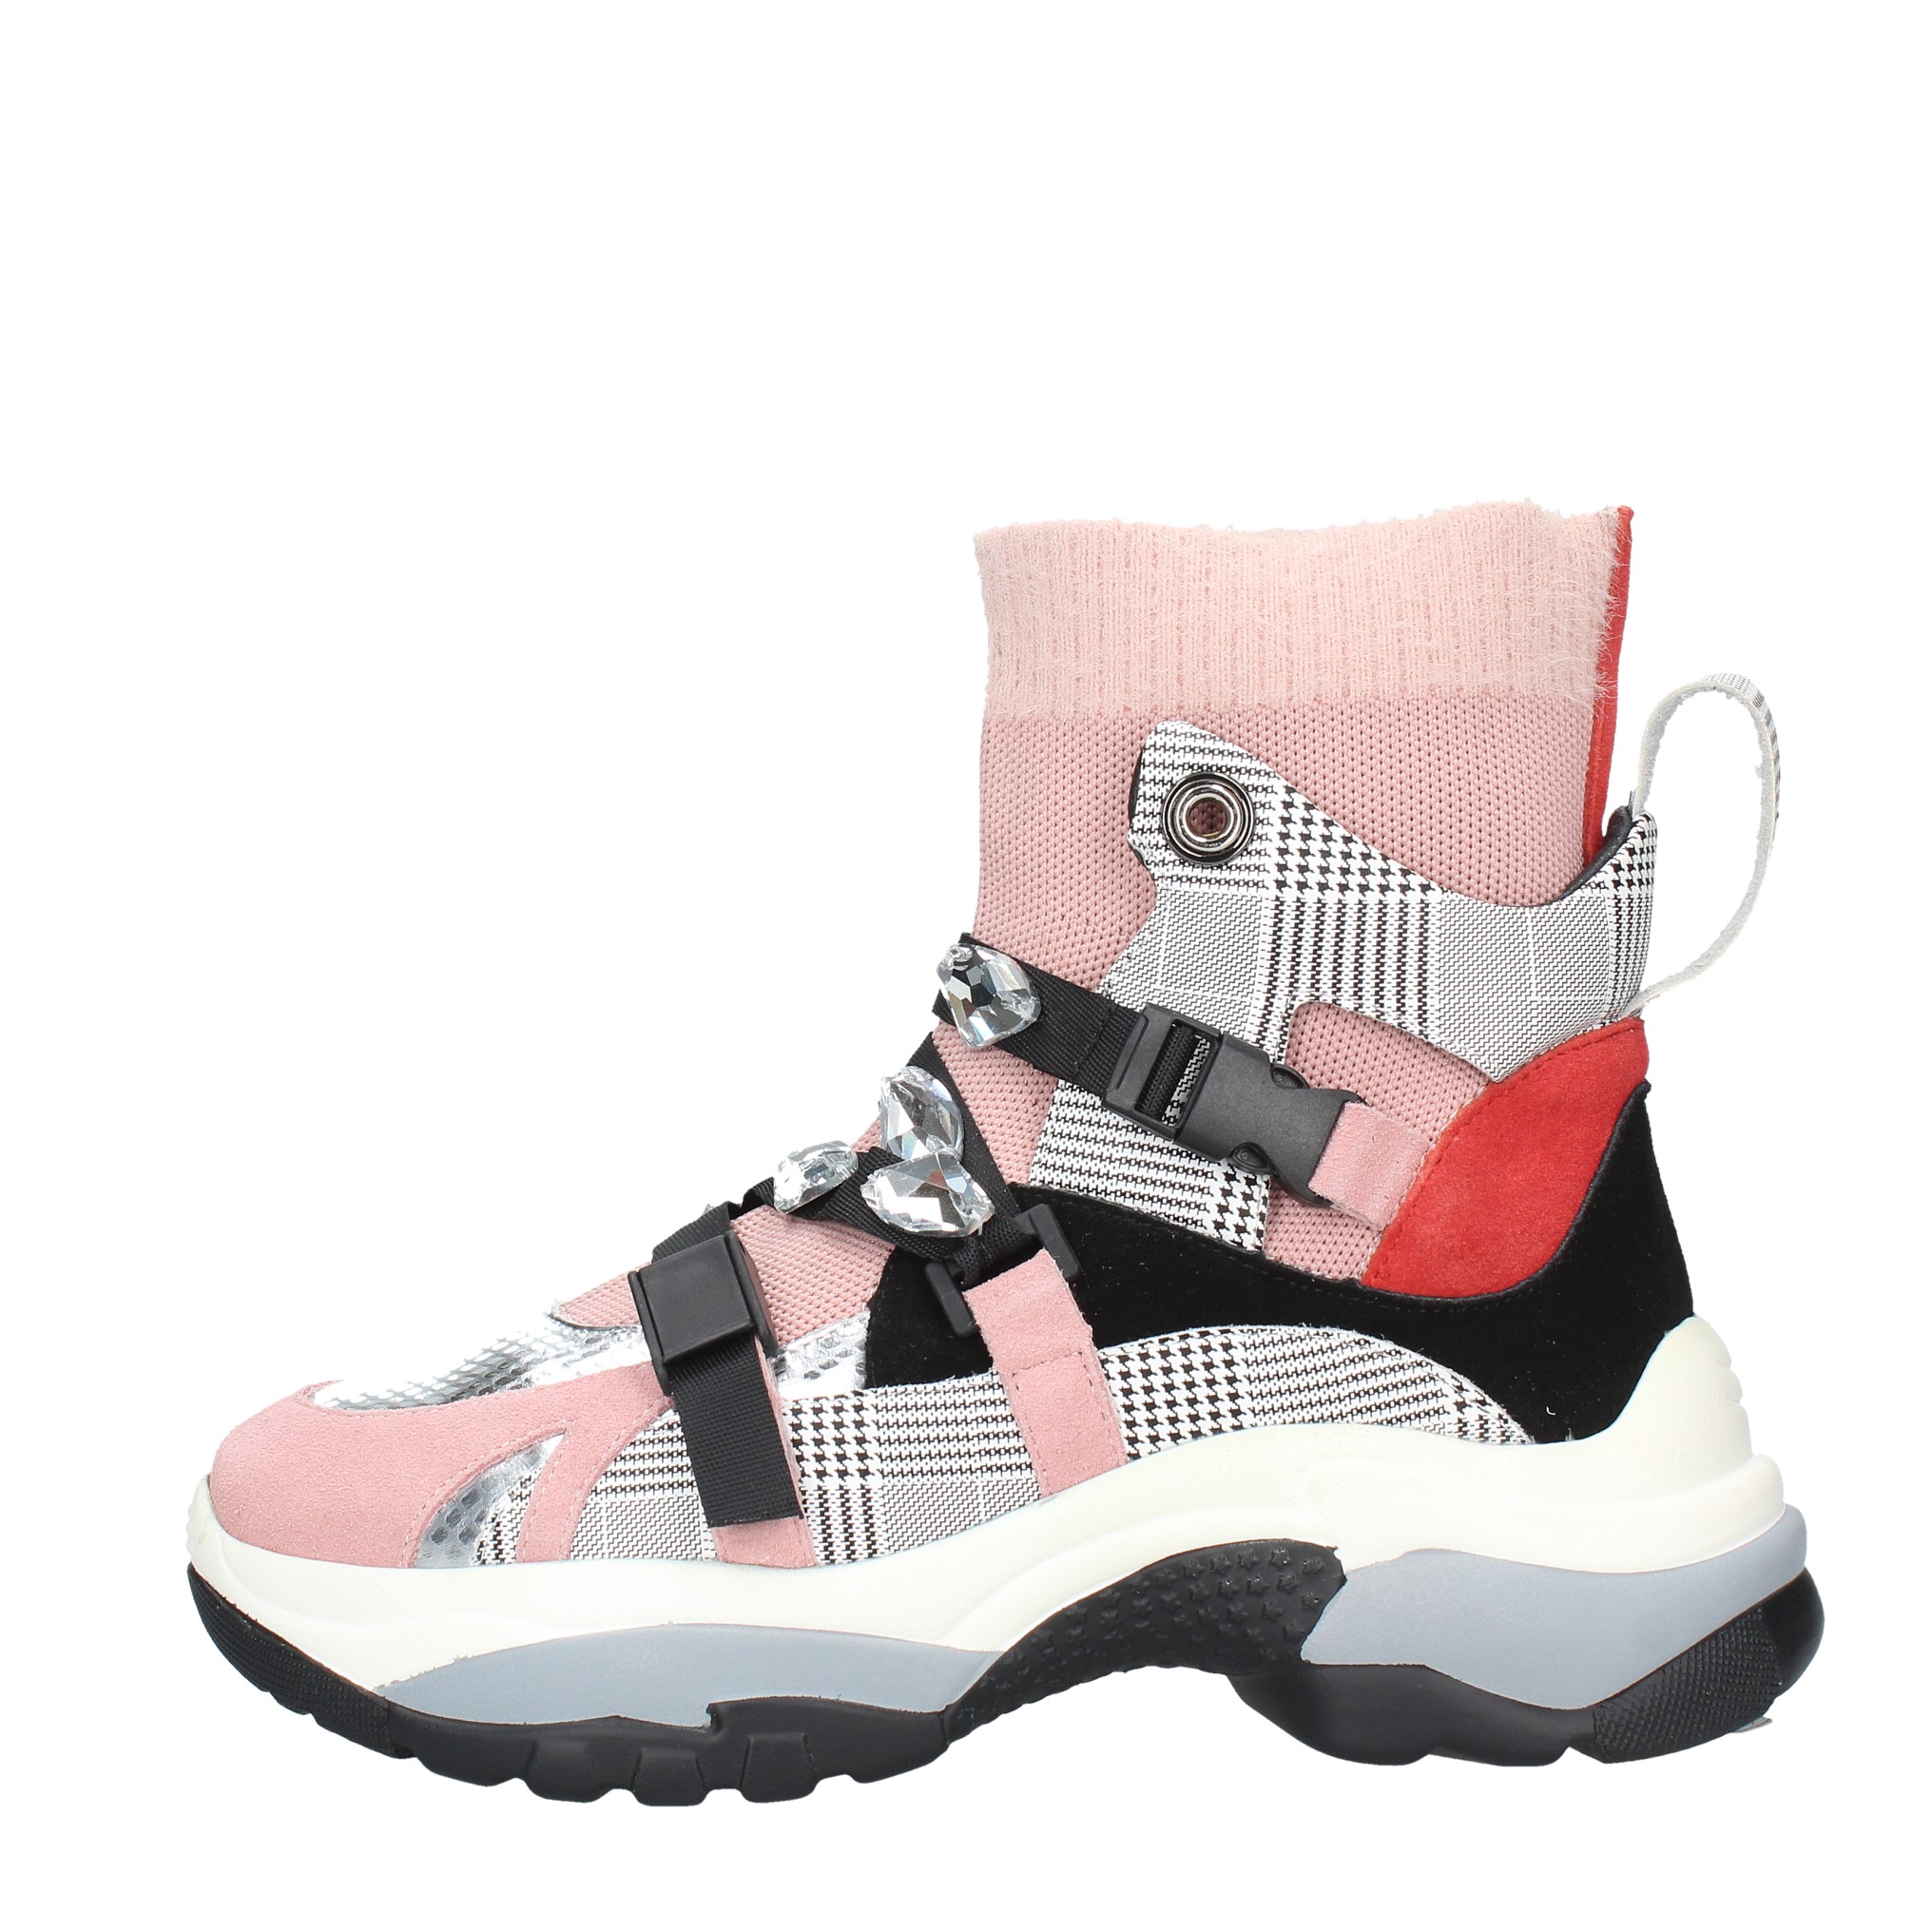 sneakers pokemaoke - POKEMAOKE - Ginevra calzature